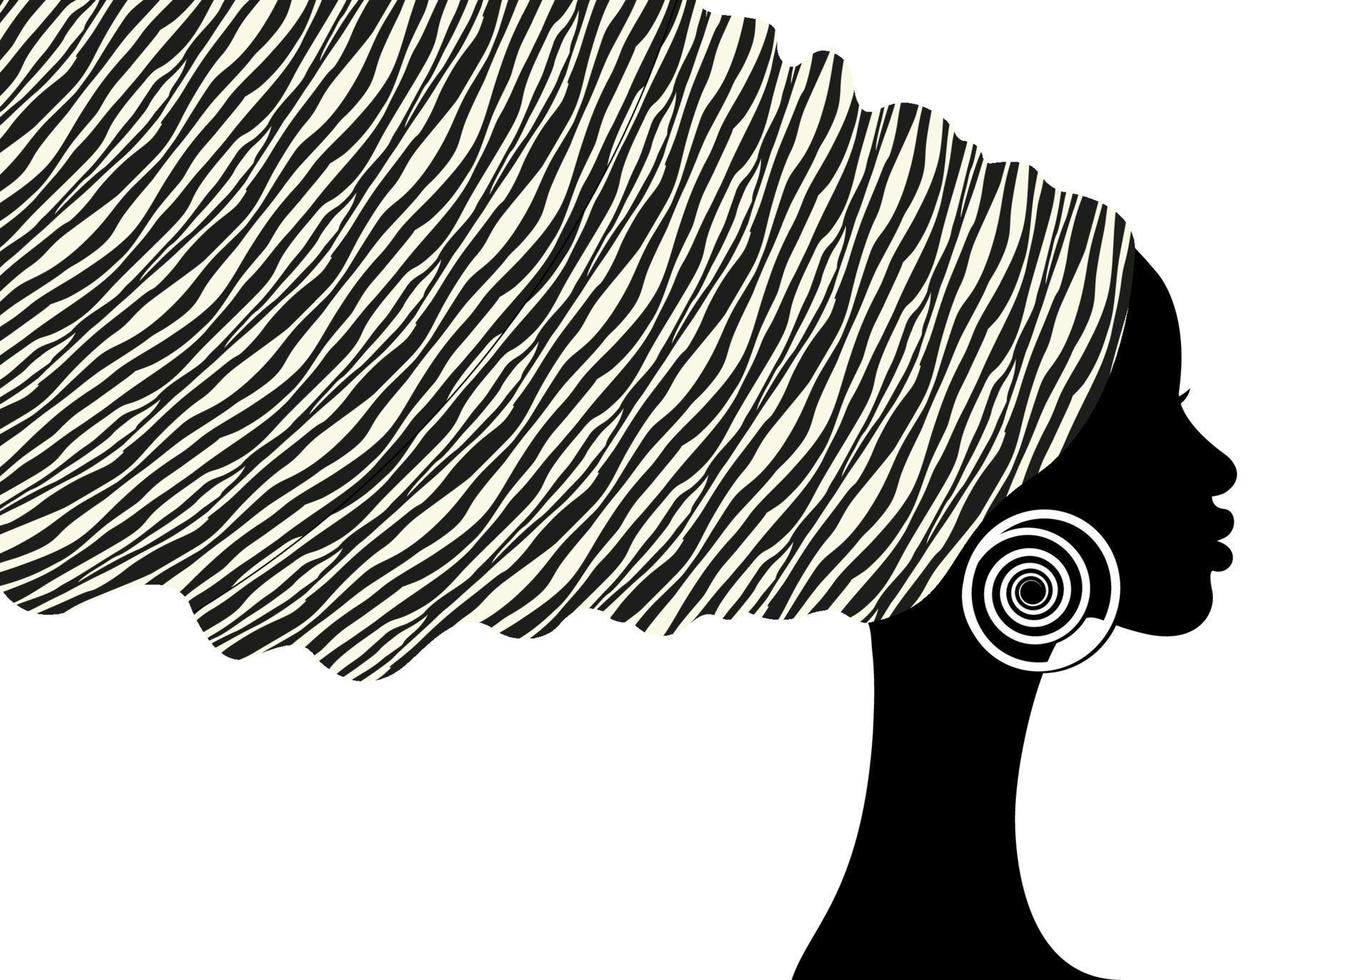 Afrikaanse zebra animal print tulband hoofd wrap, portret schoonheid vrouw in afro kapsels, logo ontwerp zwarte vrouwen haar jurk, vector Afrika etnische sjabloon geïsoleerd op witte achtergrond